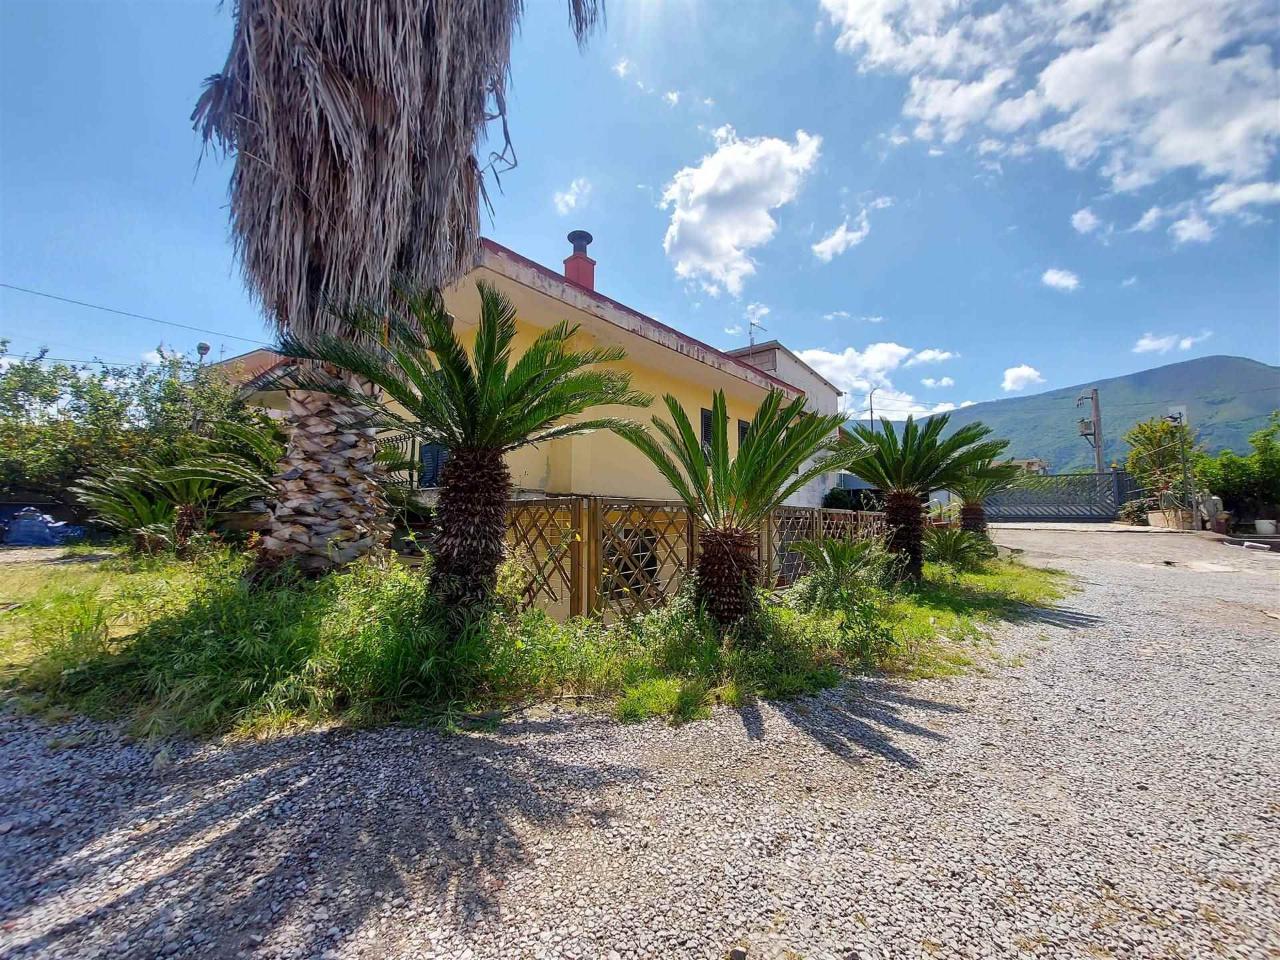 Villa in vendita a Nocera Inferiore